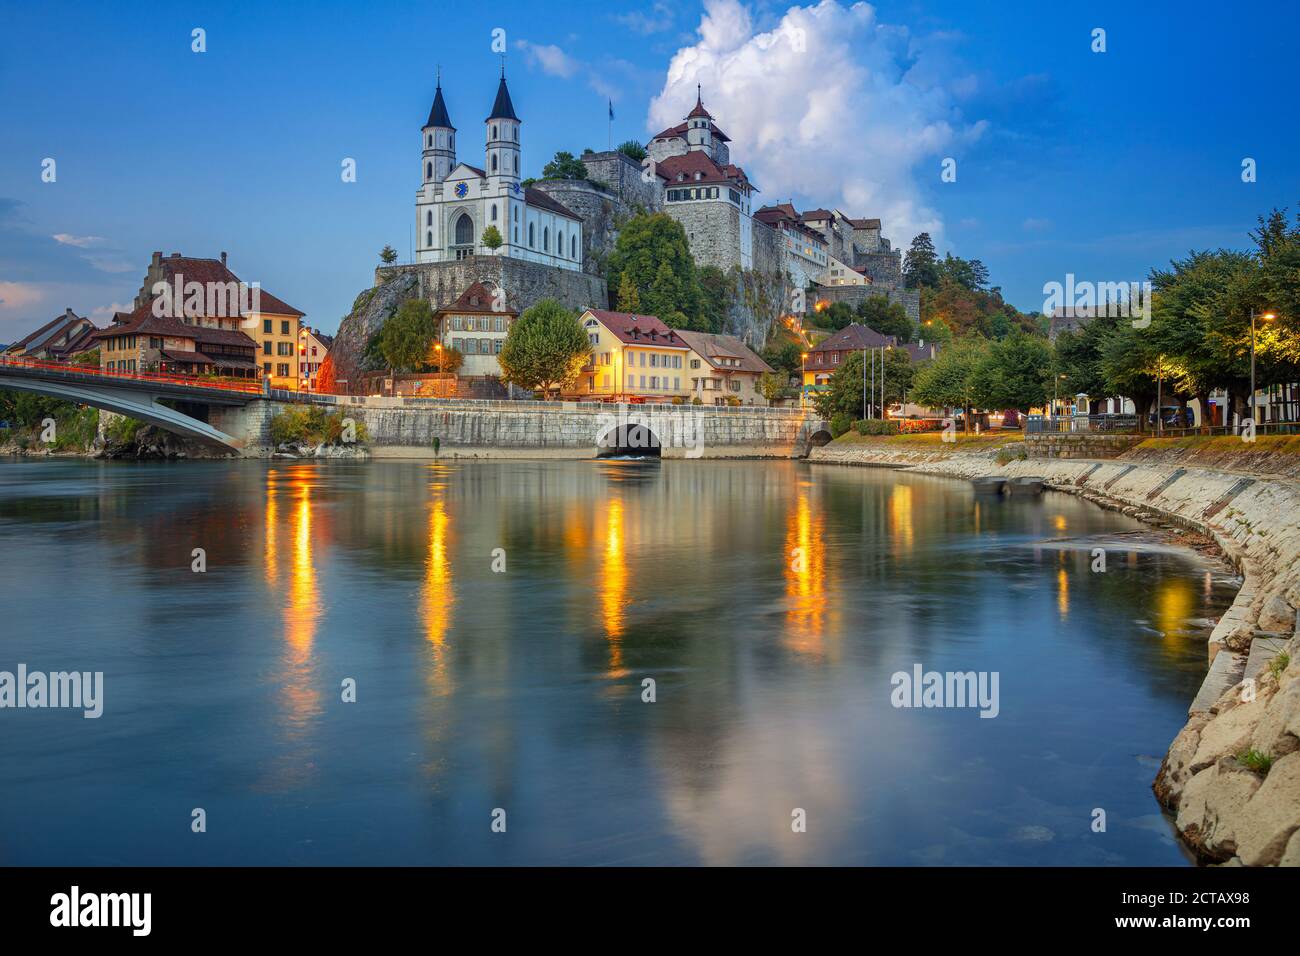 Aarburg, Suisse. Image de paysage urbain de la belle ville d'Aarburg avec le reflet de la ville dans la rivière Aare au coucher du soleil. Banque D'Images